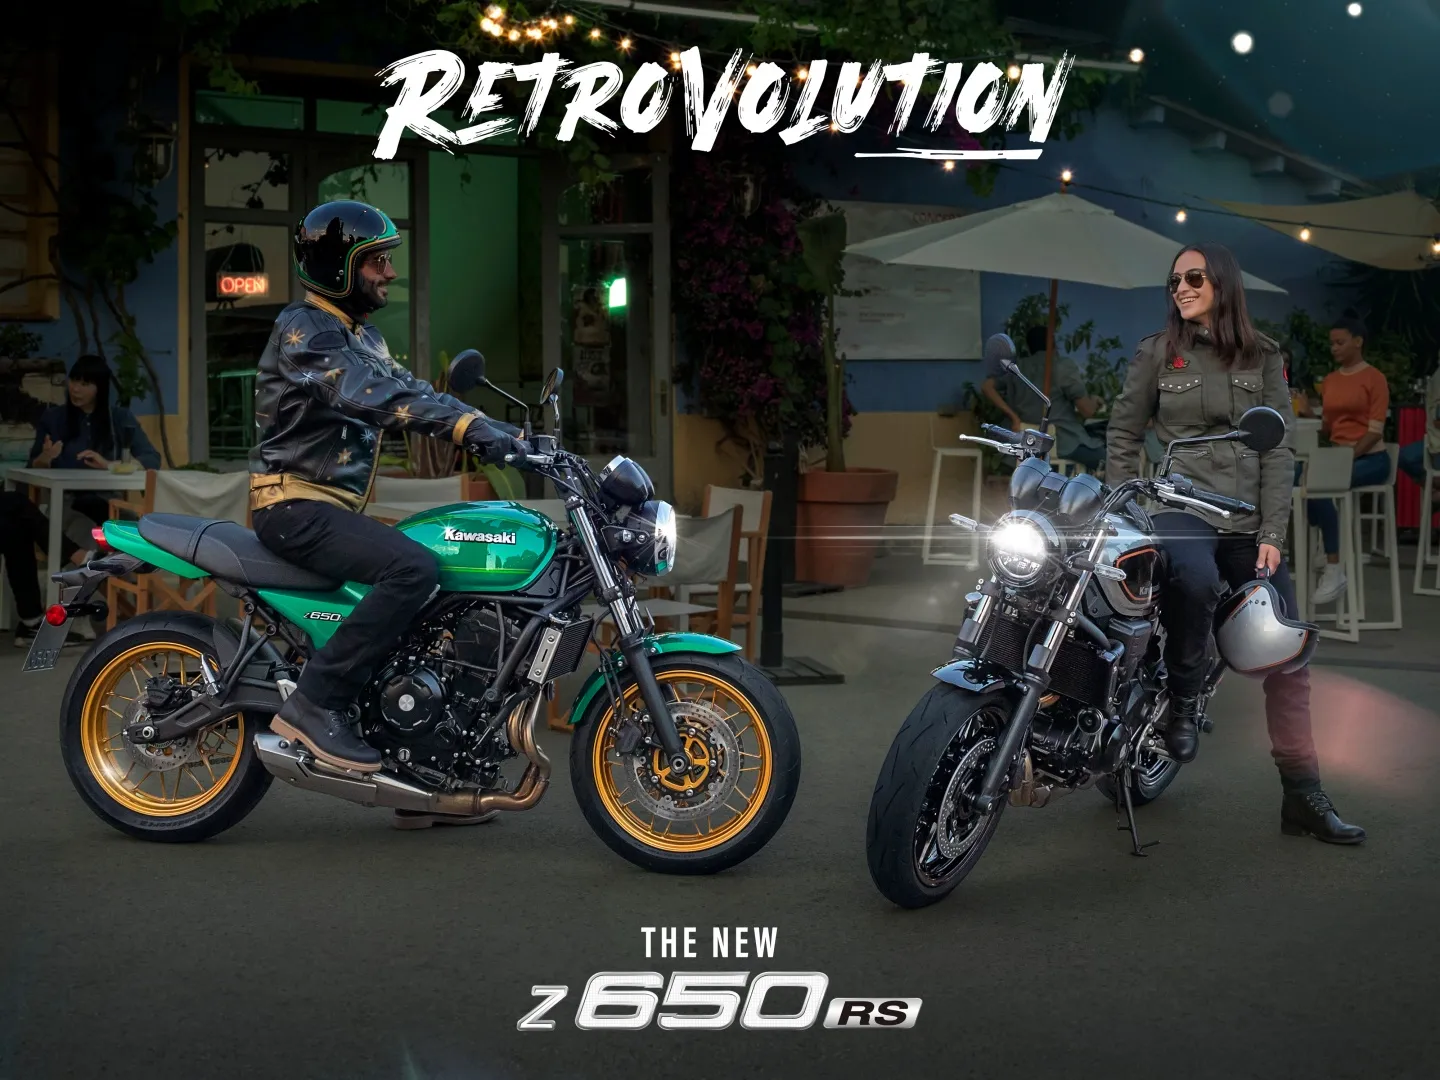 Nueva Kawasaki Z 650 RS 2022, la era de la Retrovolution